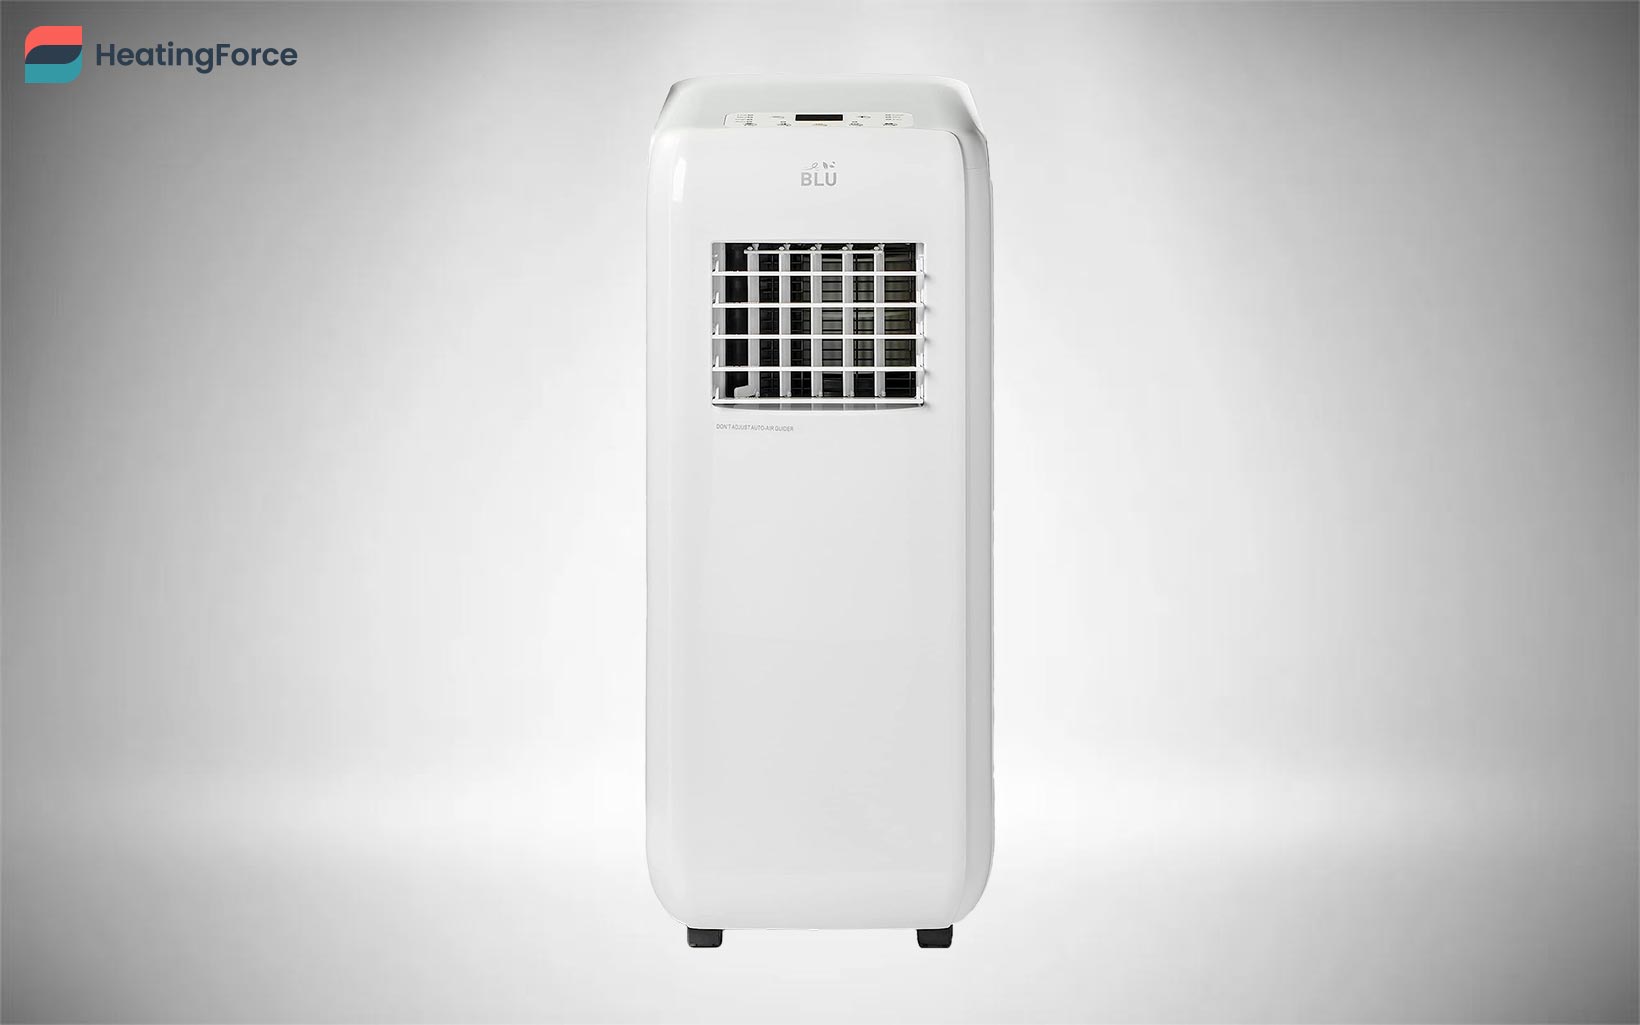 BLU-09 9,000 portable air conditioner